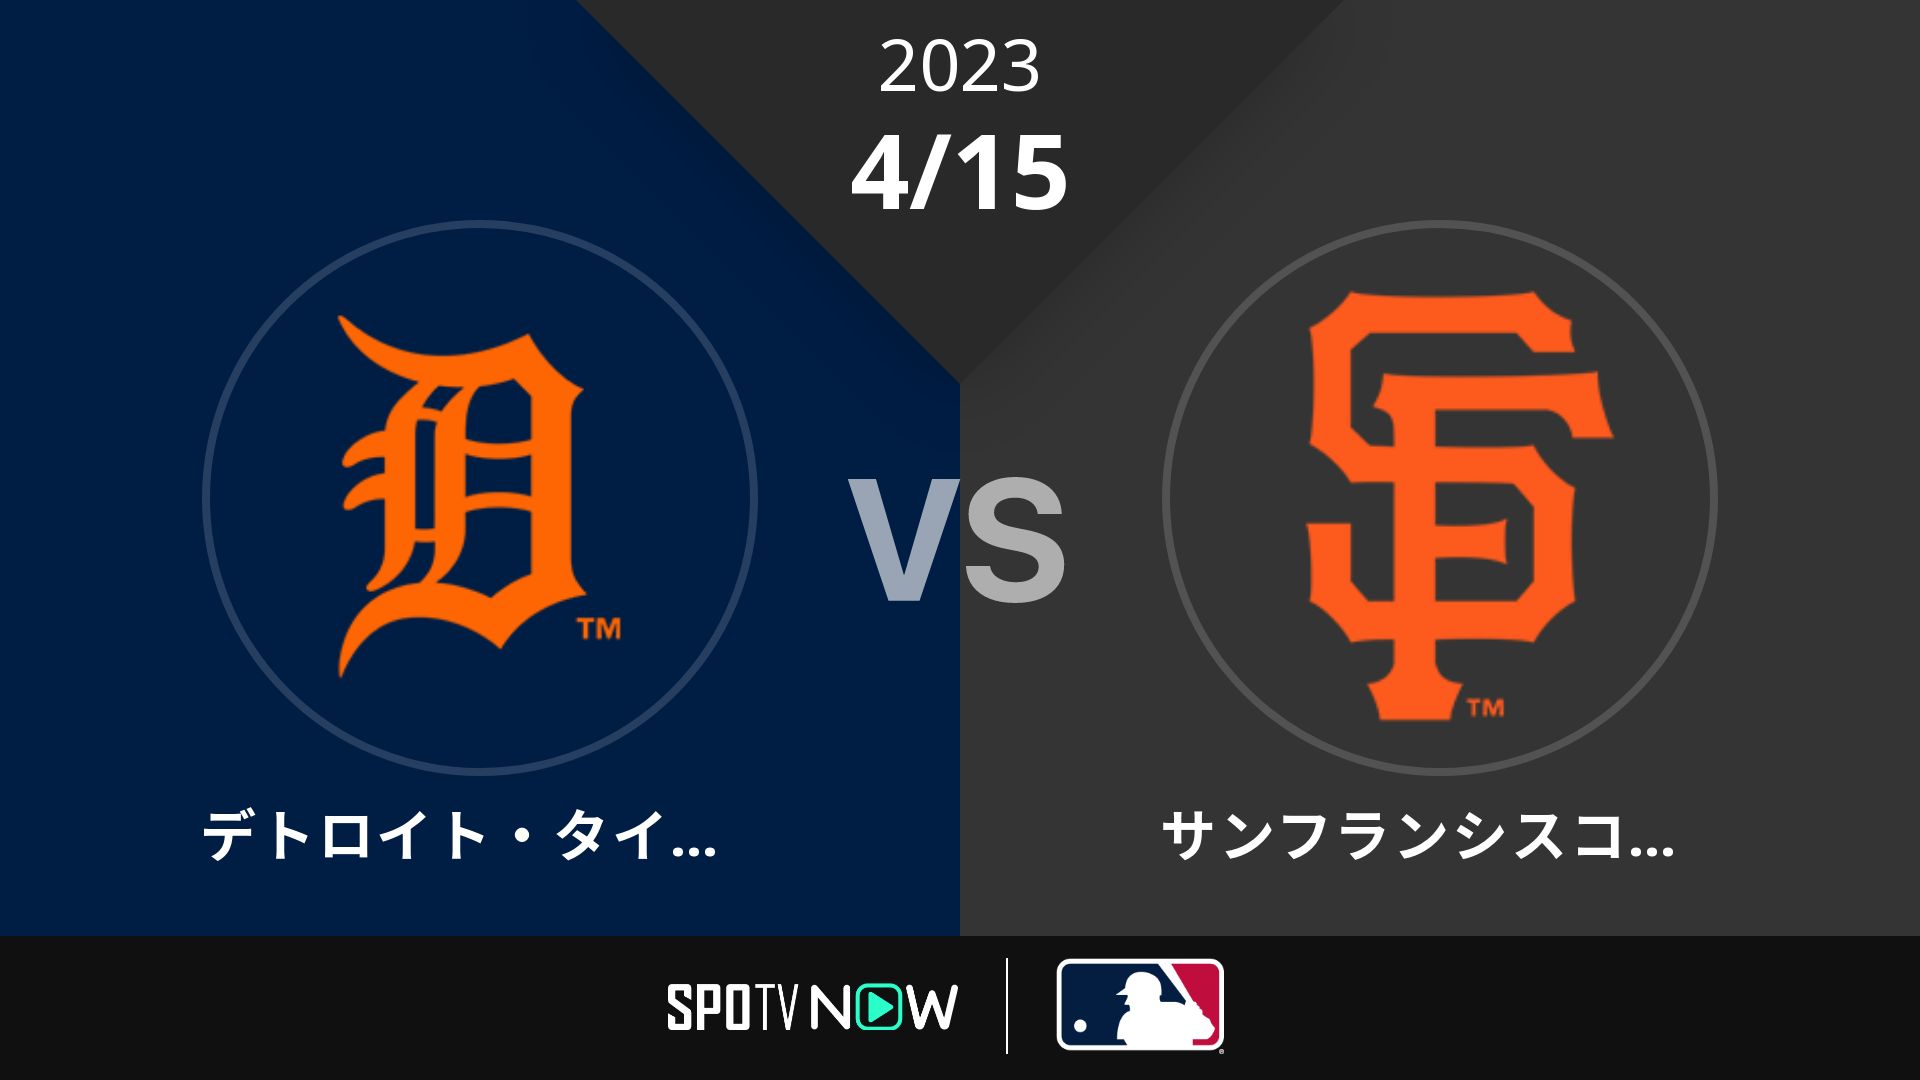 2023/4/15 タイガース vs ジャイアンツ [MLB]